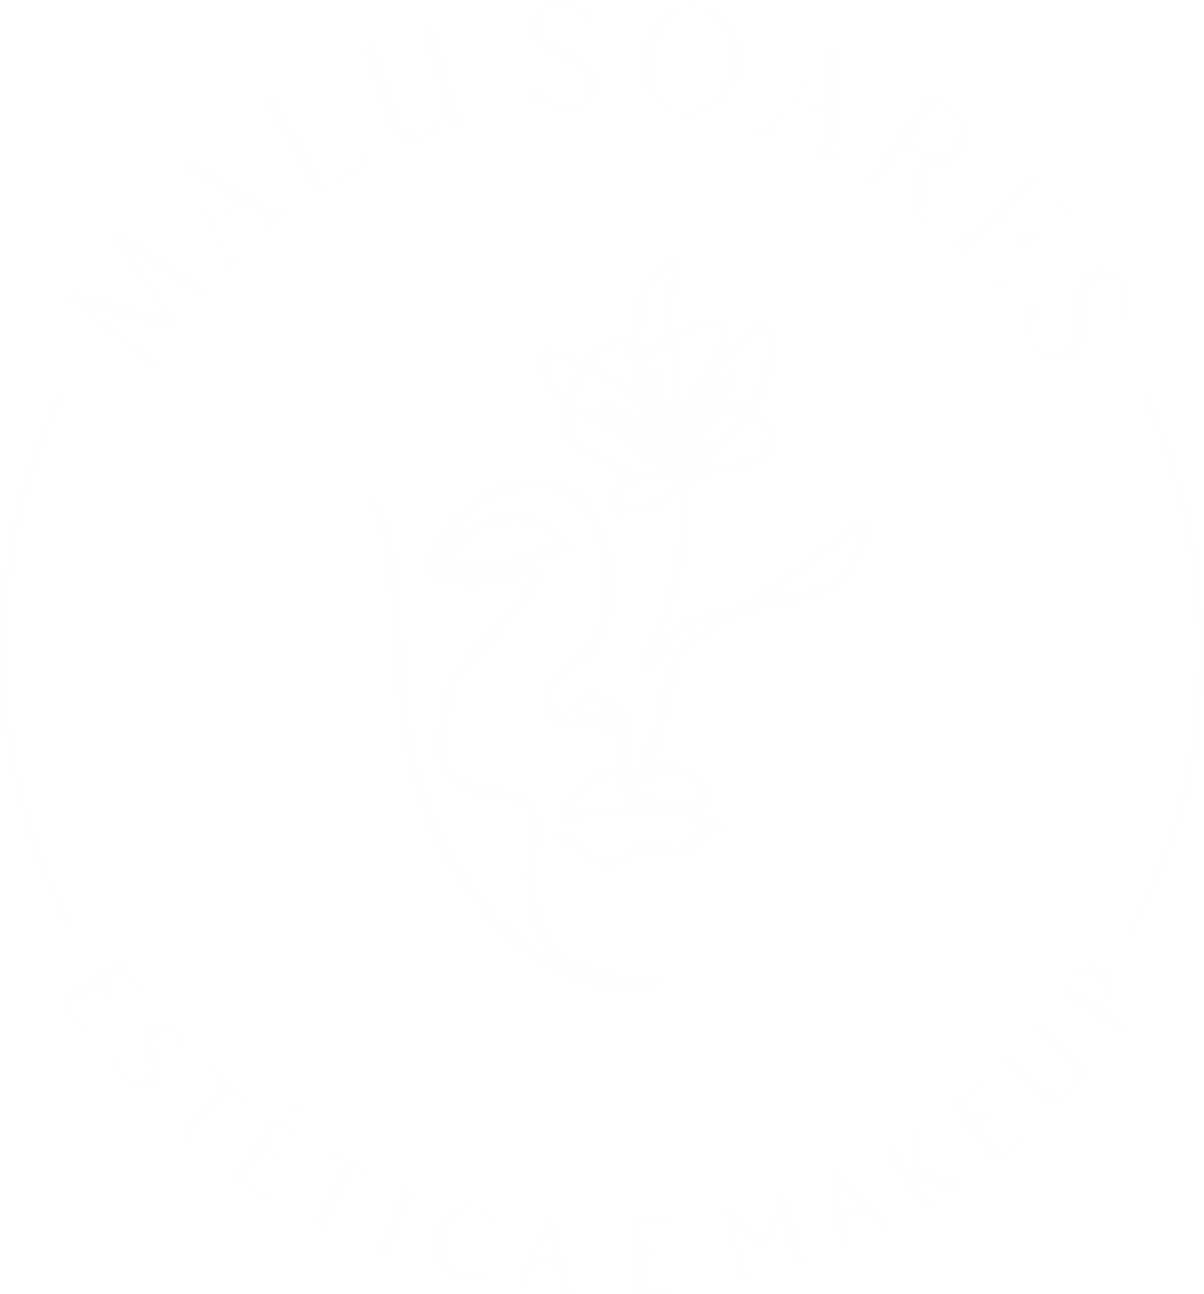 Logo Estética Malu Soares